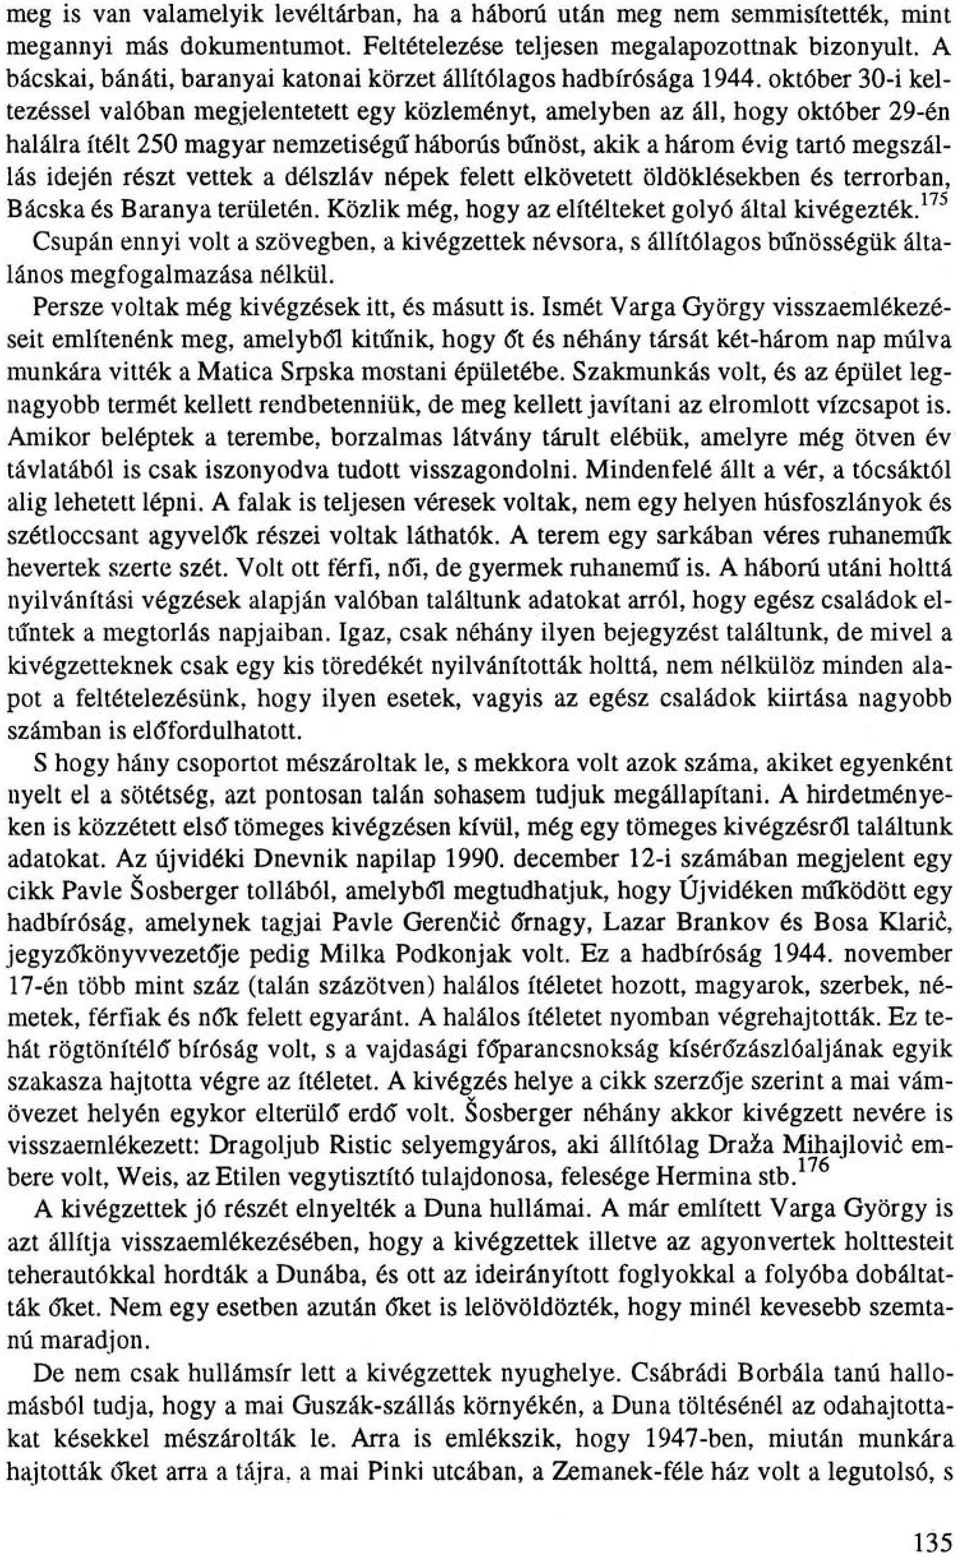 október 30-i keltezéssel valóban megjelentetett egy közleményt, amelyben az áll, hogy október 29-én halálra ítélt 250 magyar nemzetiségű háborús bűnöst, akik a három évig tartó megszállás idején